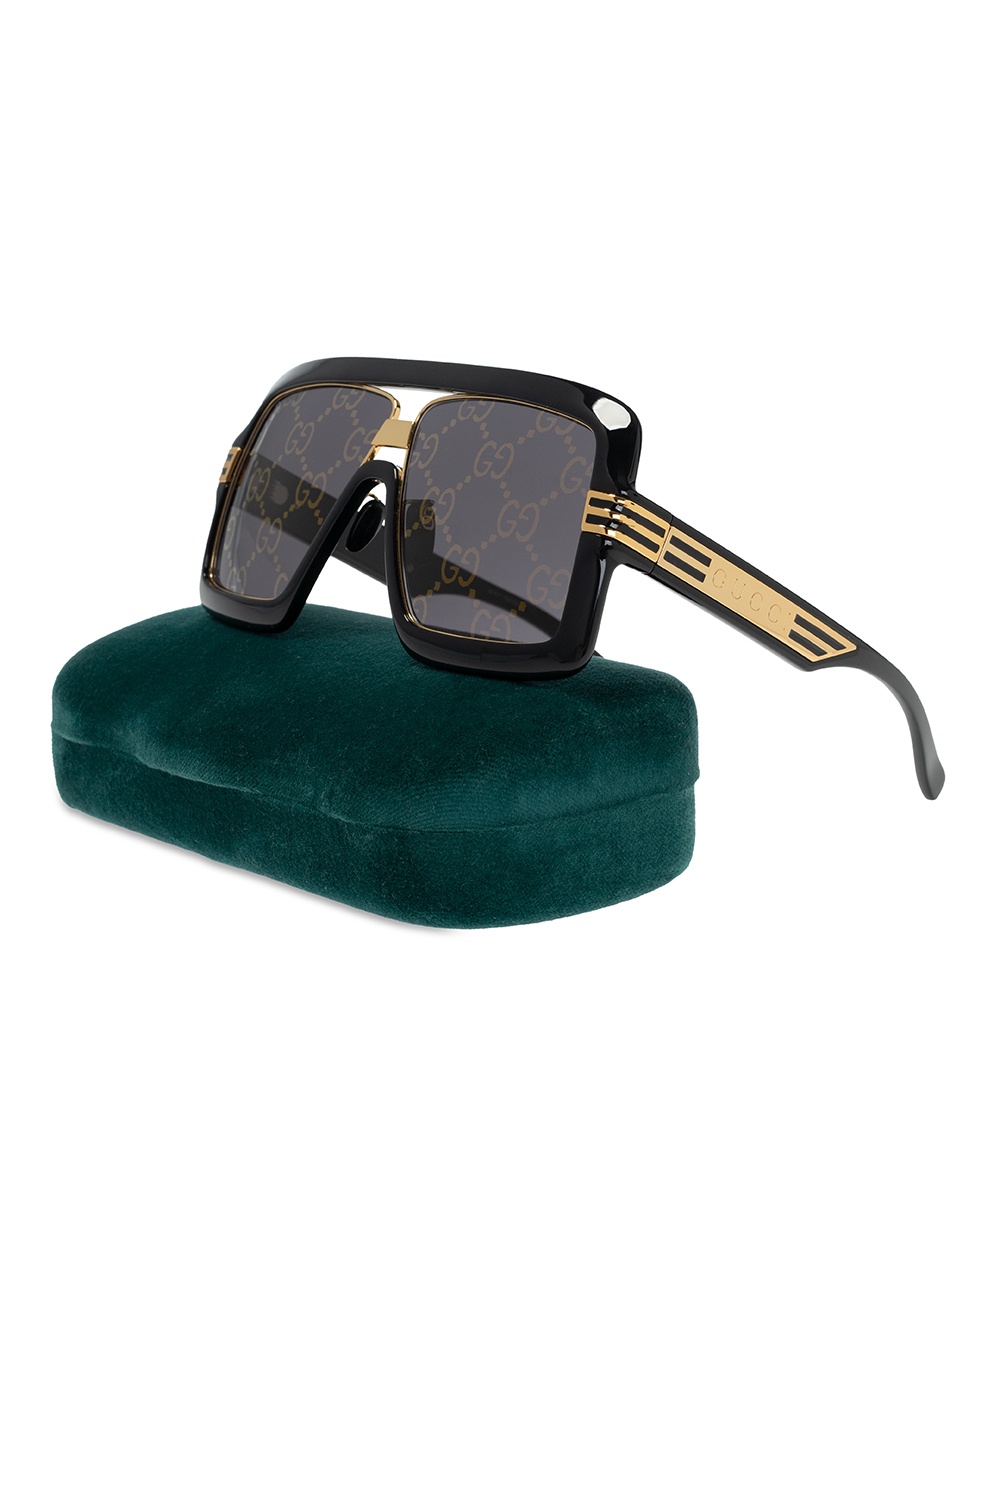 Gucci Bv1107s Gold Sunglasses